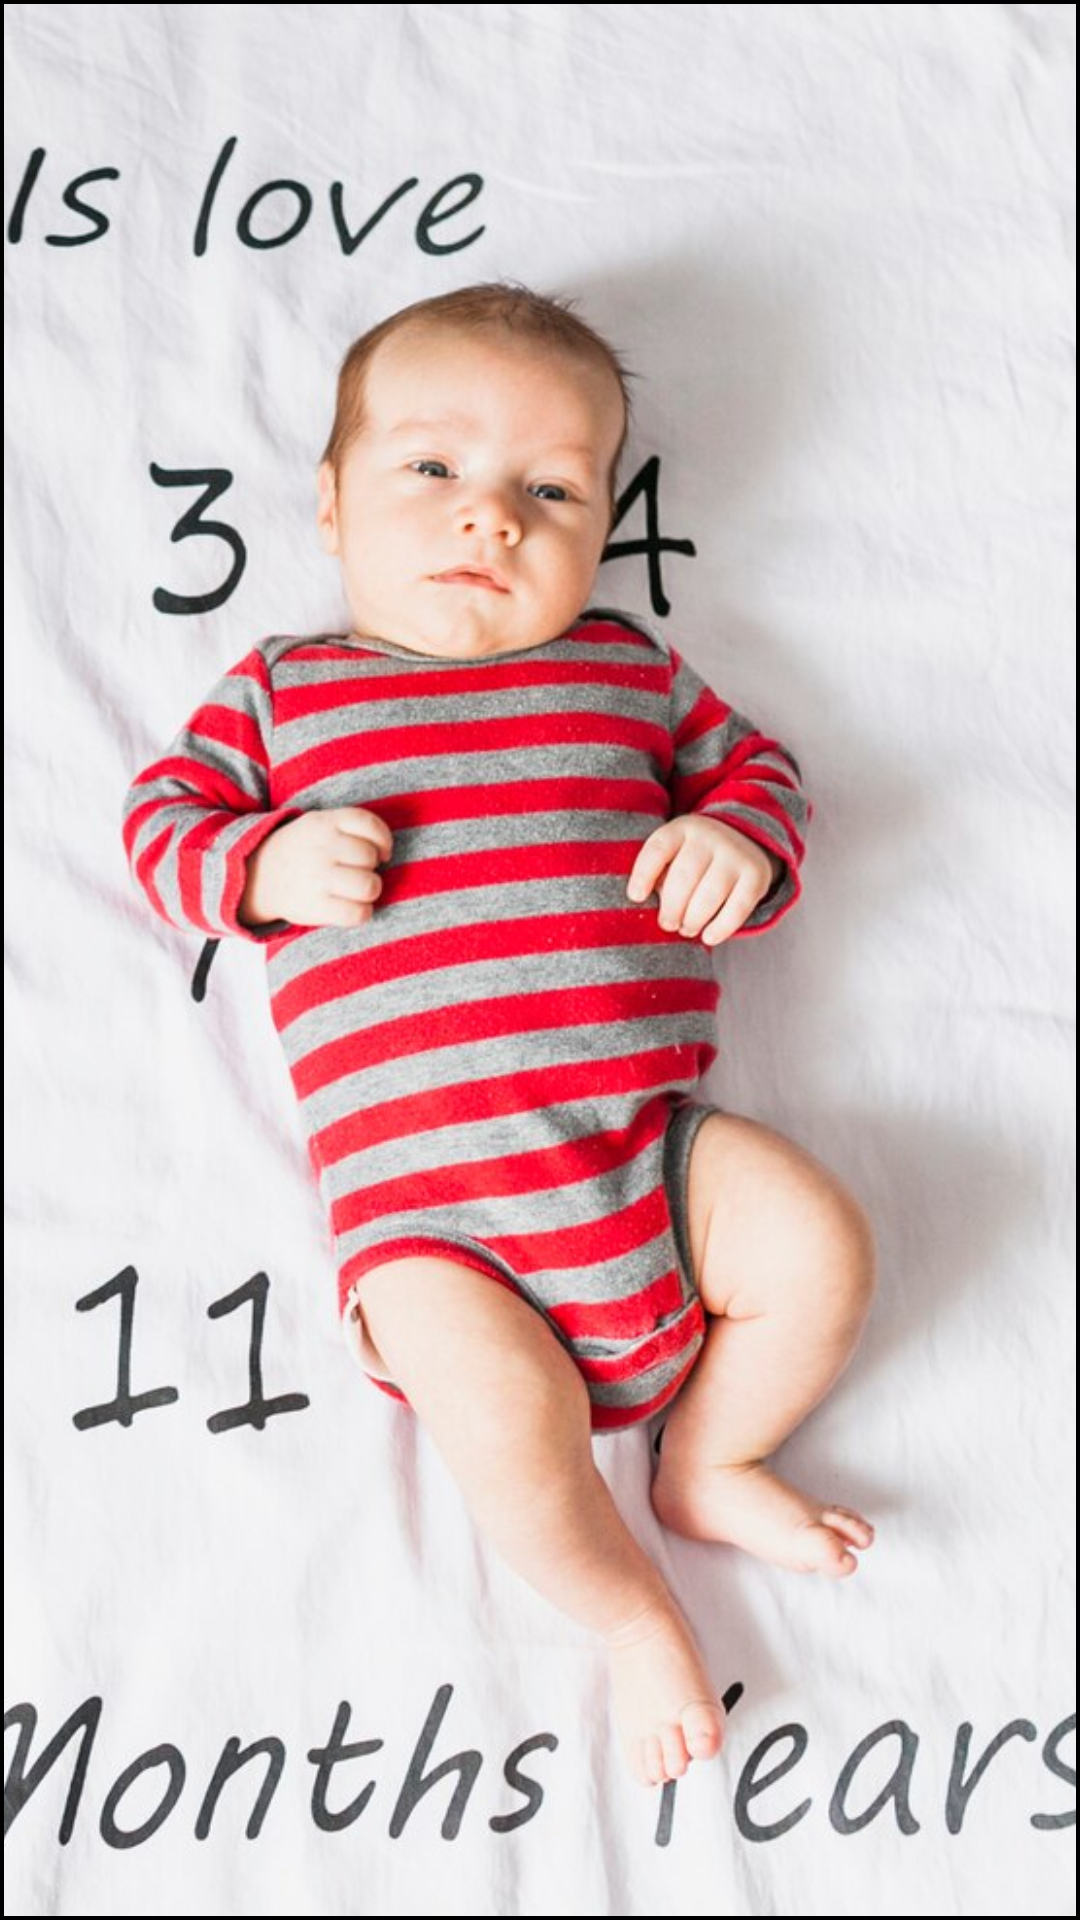 3 महीने के बच्चे का वजन कितना होना चाहिए?